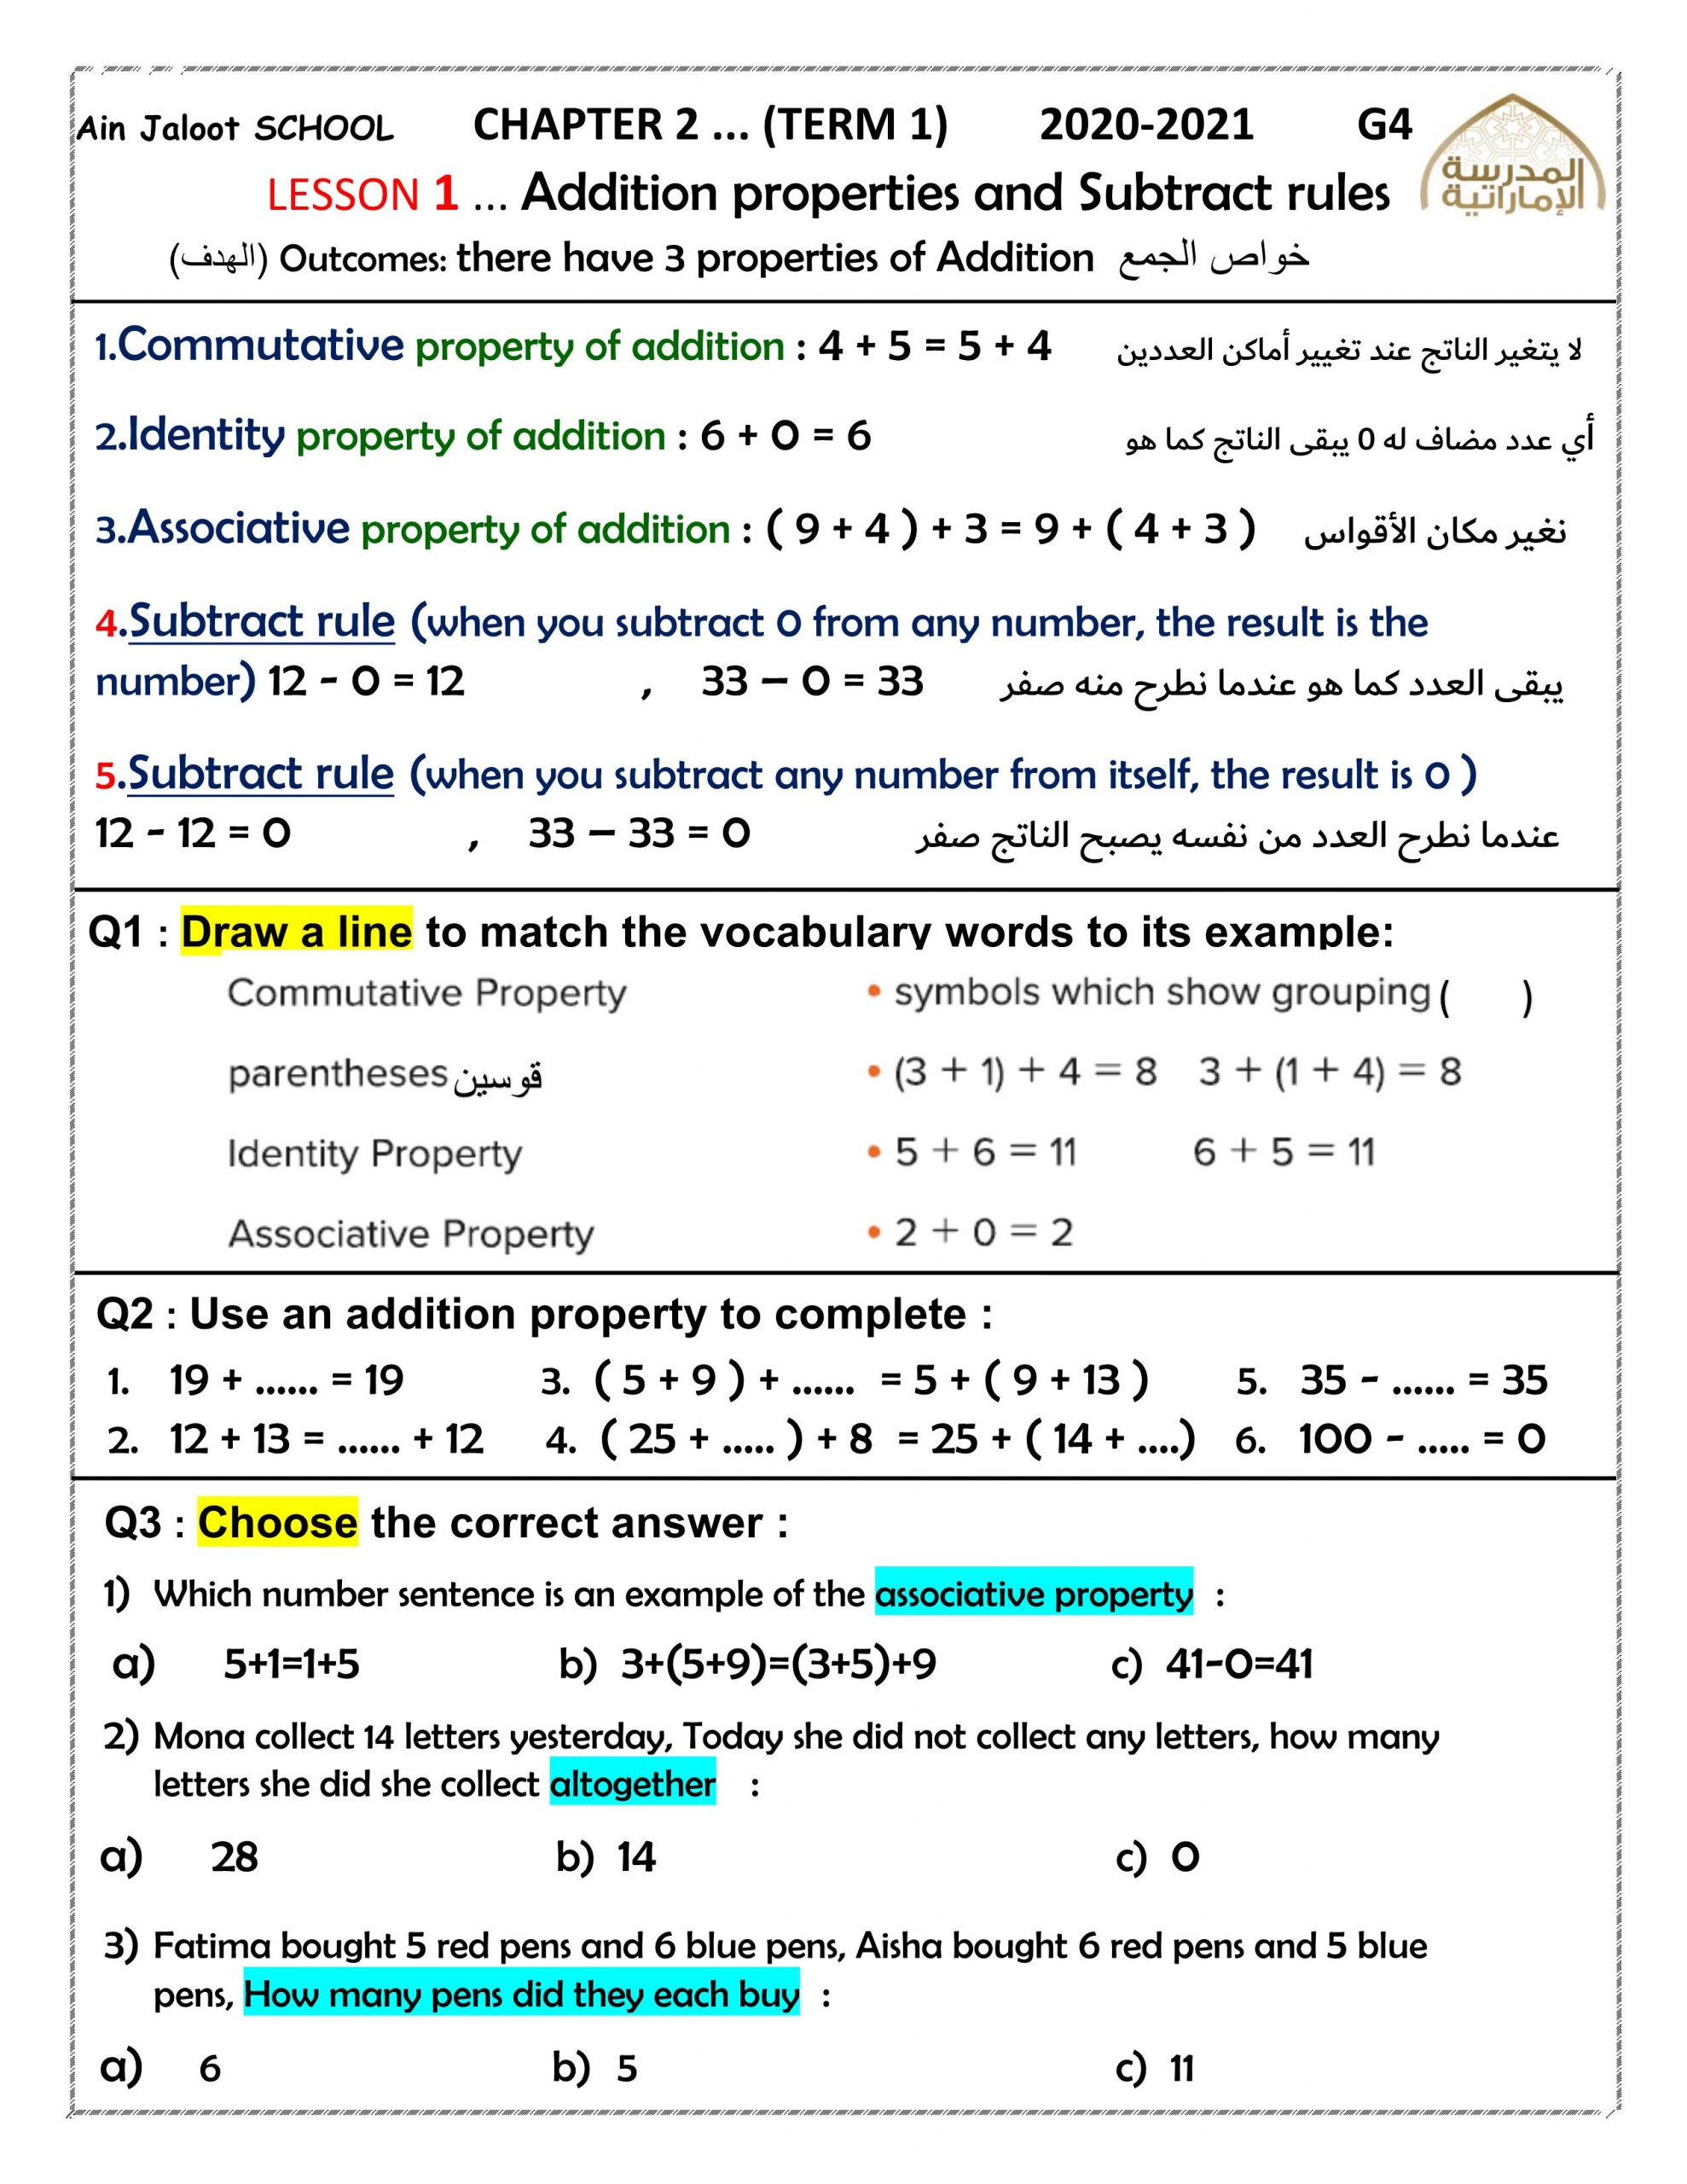 حل اوراق عمل CHAPTER 2 بالانجليزي الصف الرابع مادة الرياضيات المتكاملة